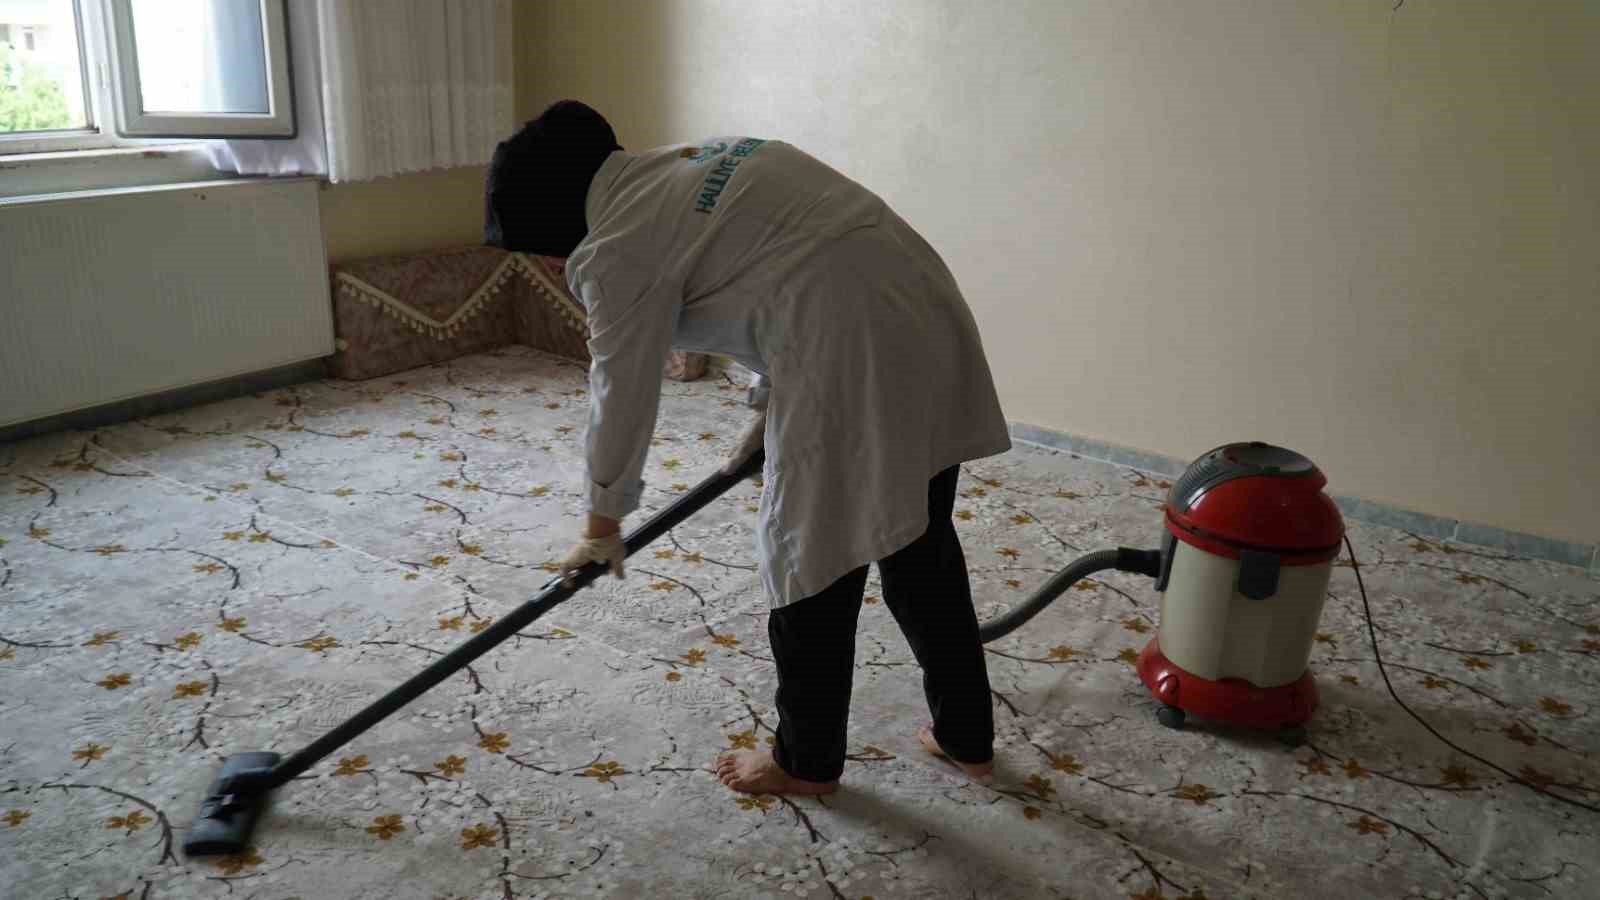 Haliliye’de evde bakim hizmeti ile haneler temizleniyor
